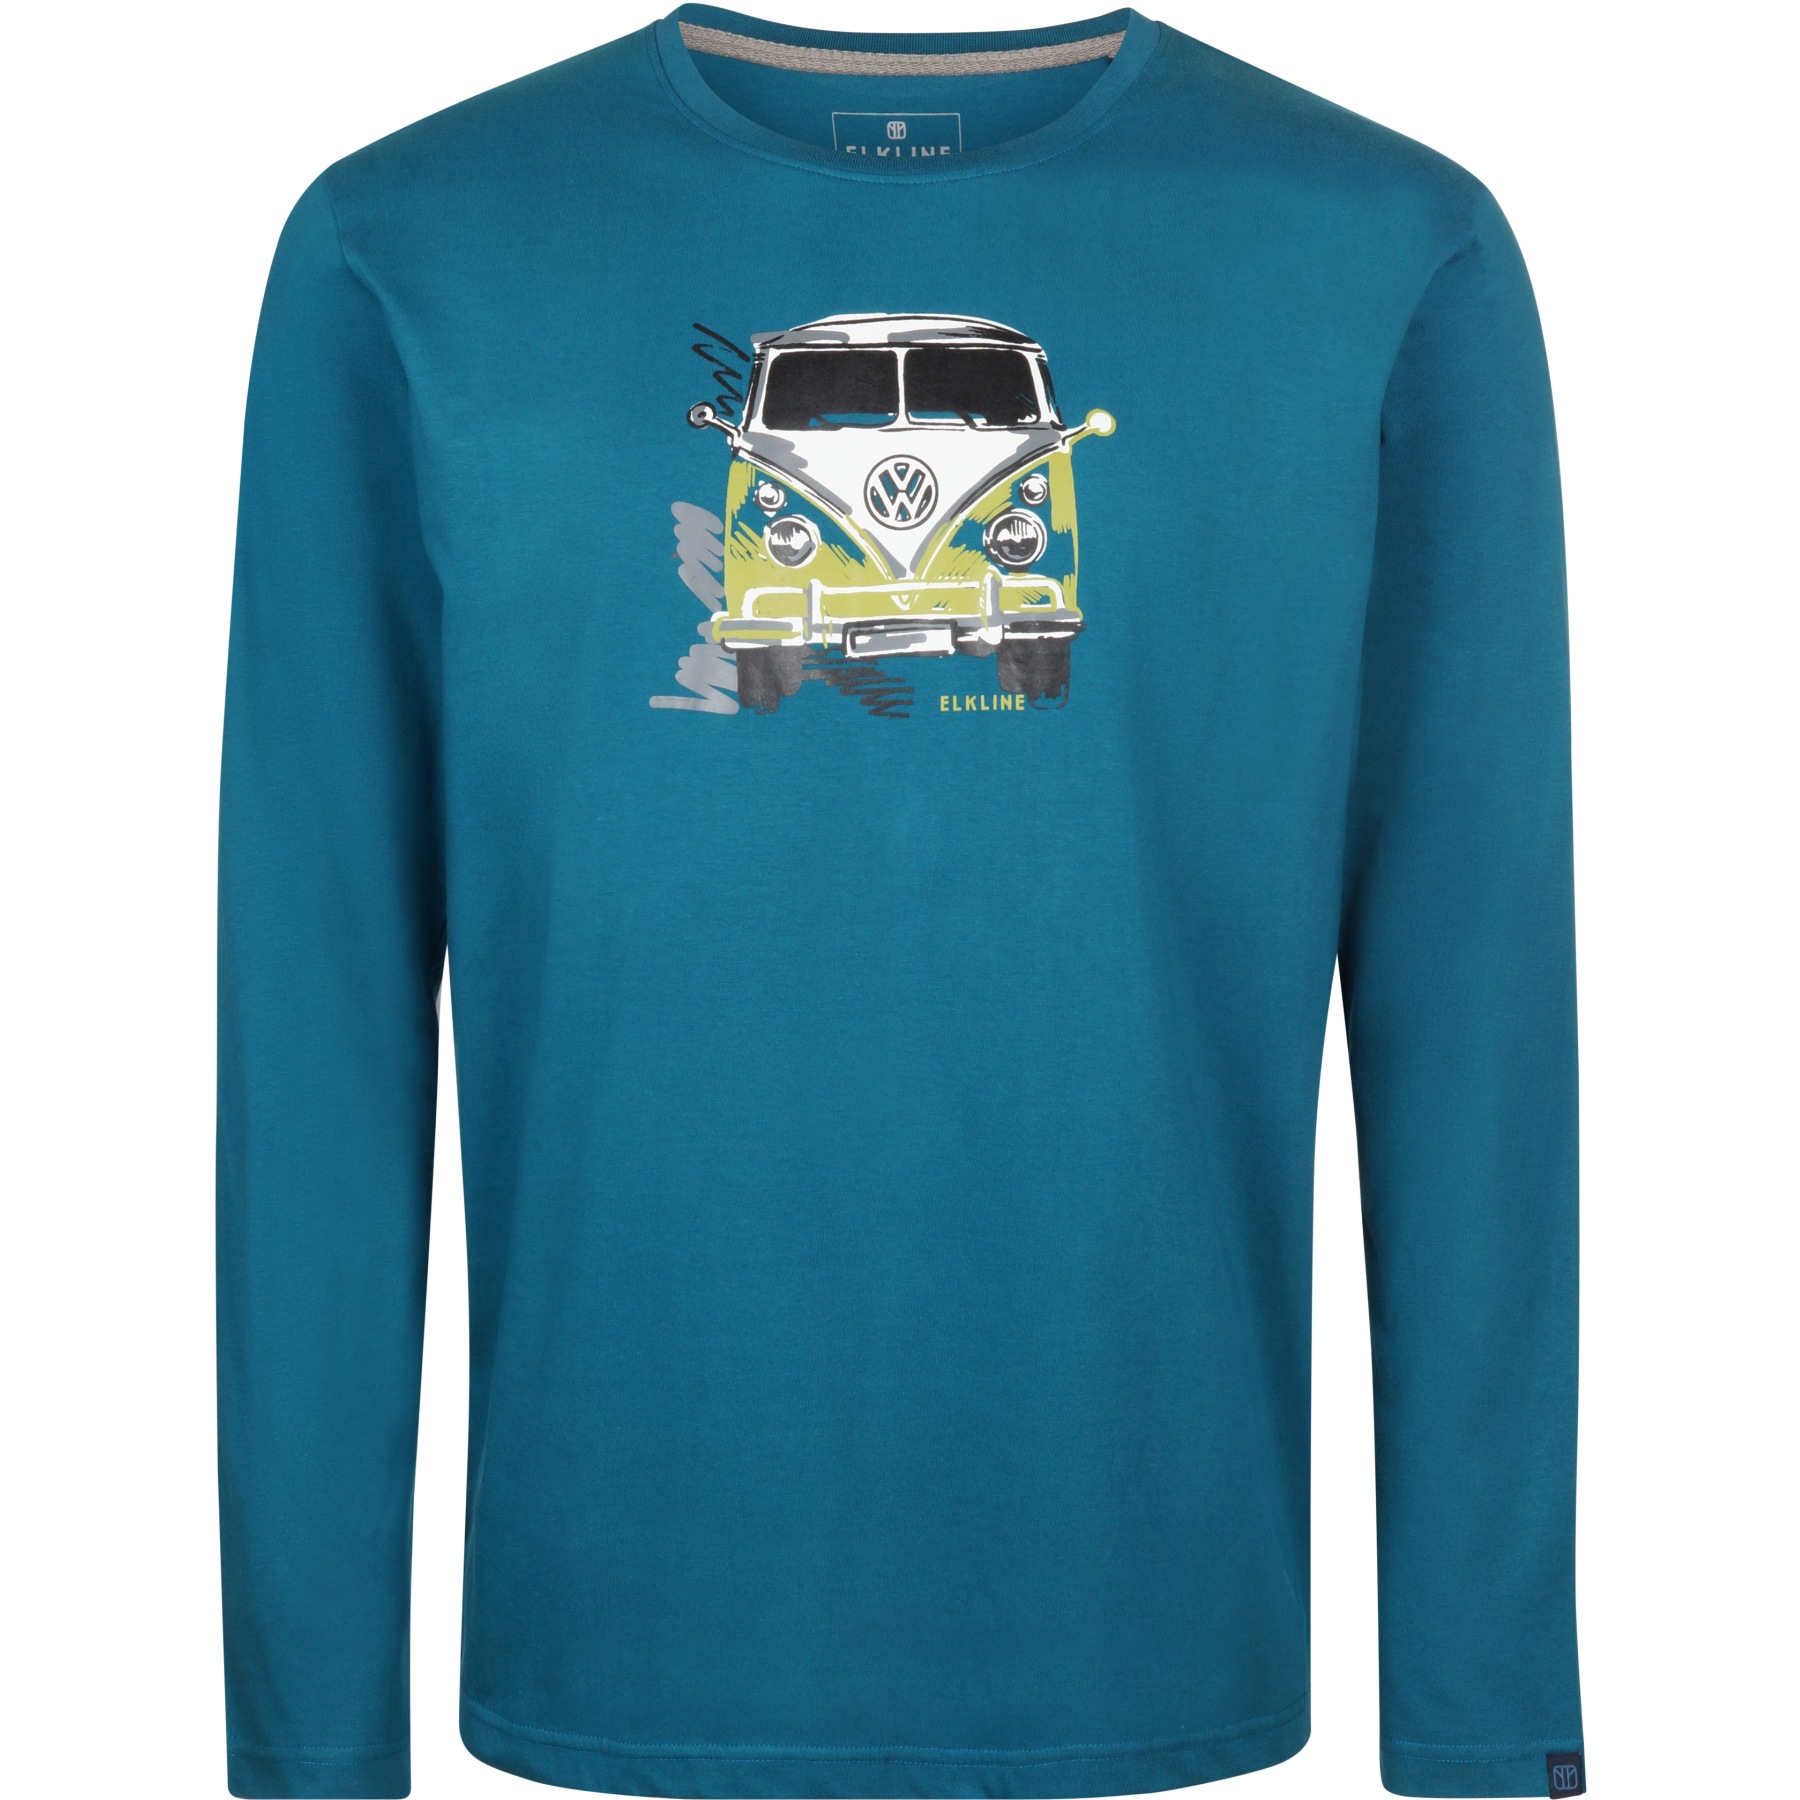 Produktbild von Elkline LANGE DABEI Langarm-Shirt - Lizensiert von VW - blue coral